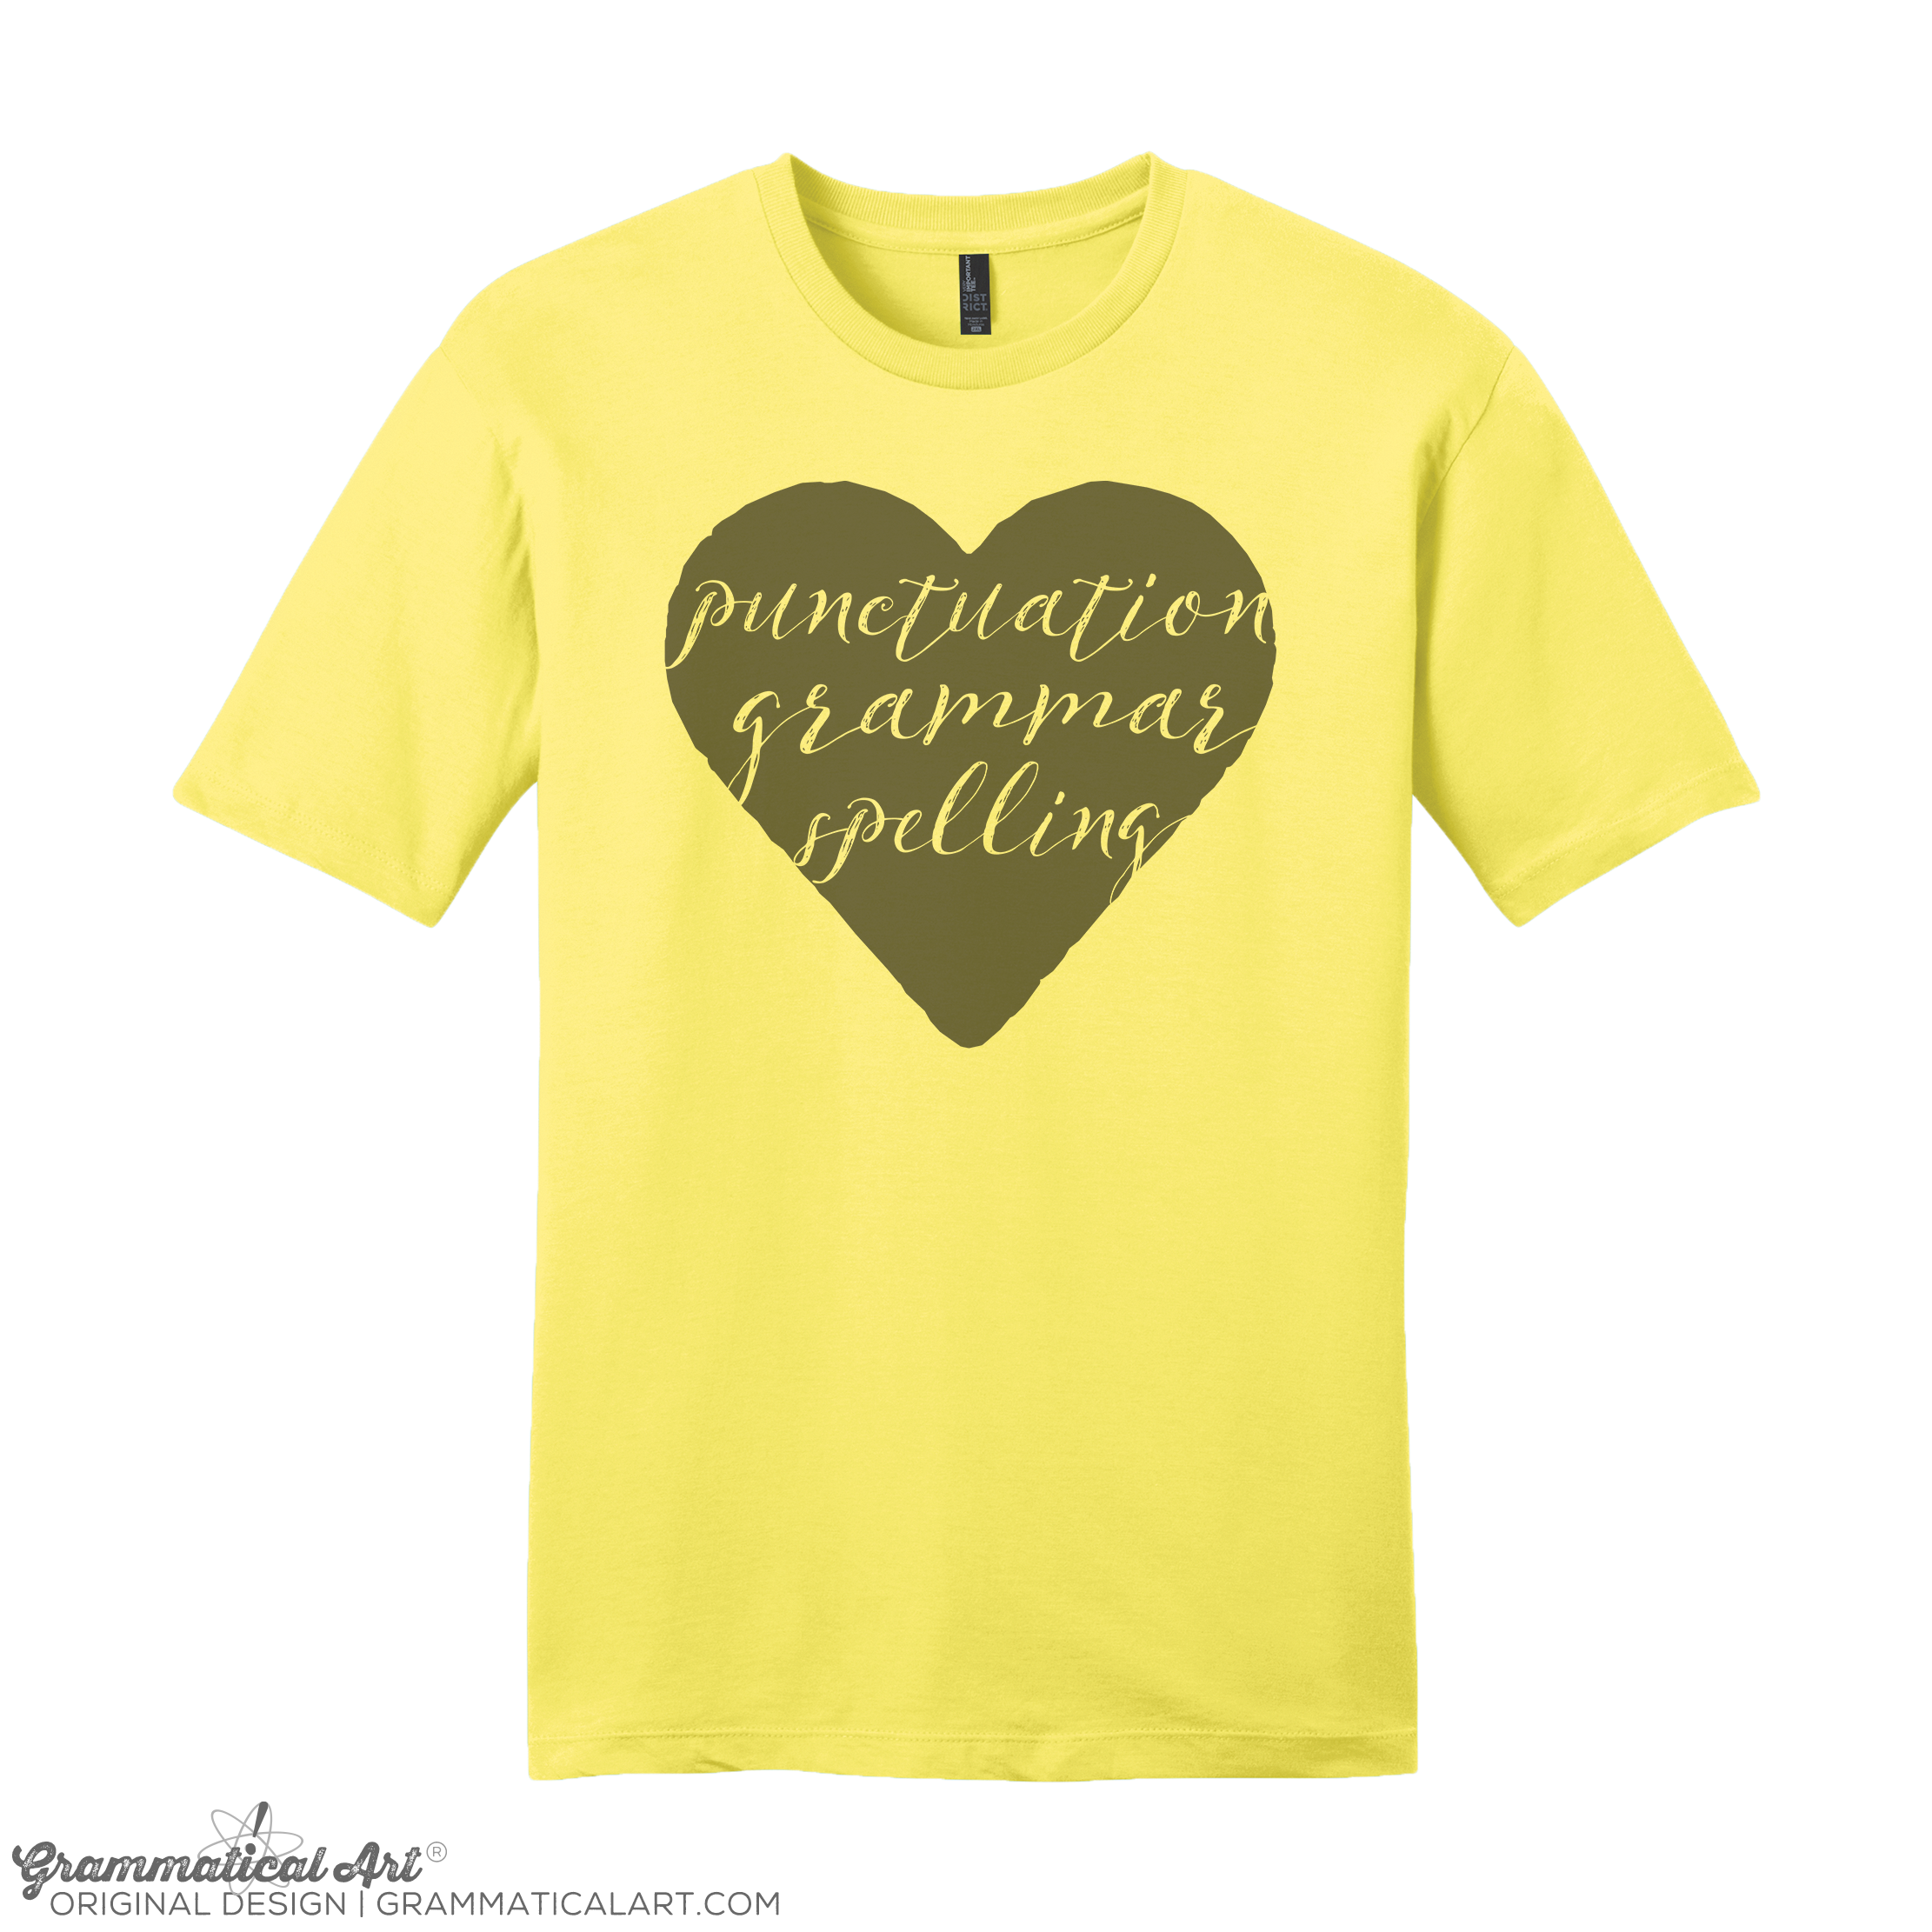 Women’s Punctuation Grammar Spelling Shirt | Grammatical Art